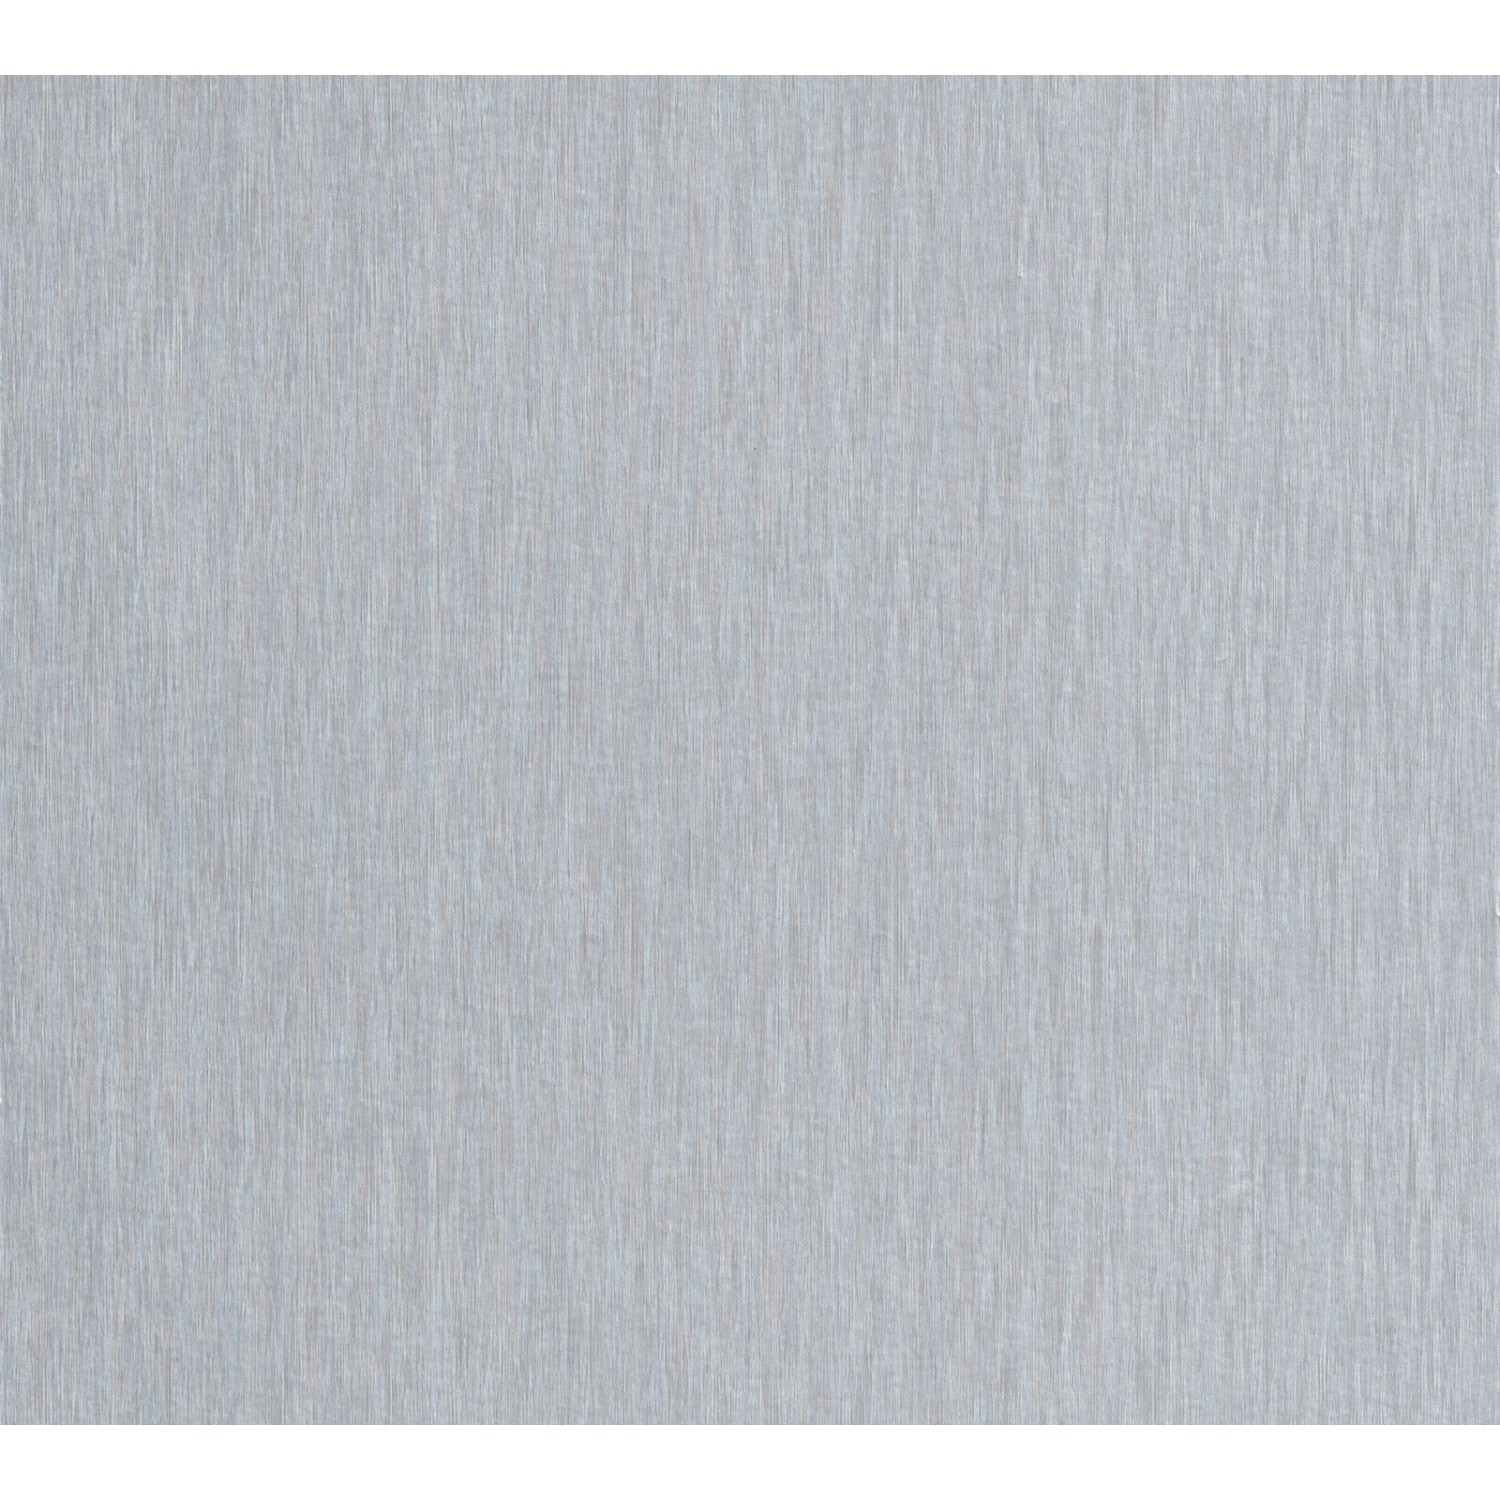 Bricoflor Magnetische Tapete in Silber Grau Metallic Vinyltapete Magnetisch Ideal für Büro Moderne Magnettapete Selbstklebend als Tapetenpaneel von Bricoflor